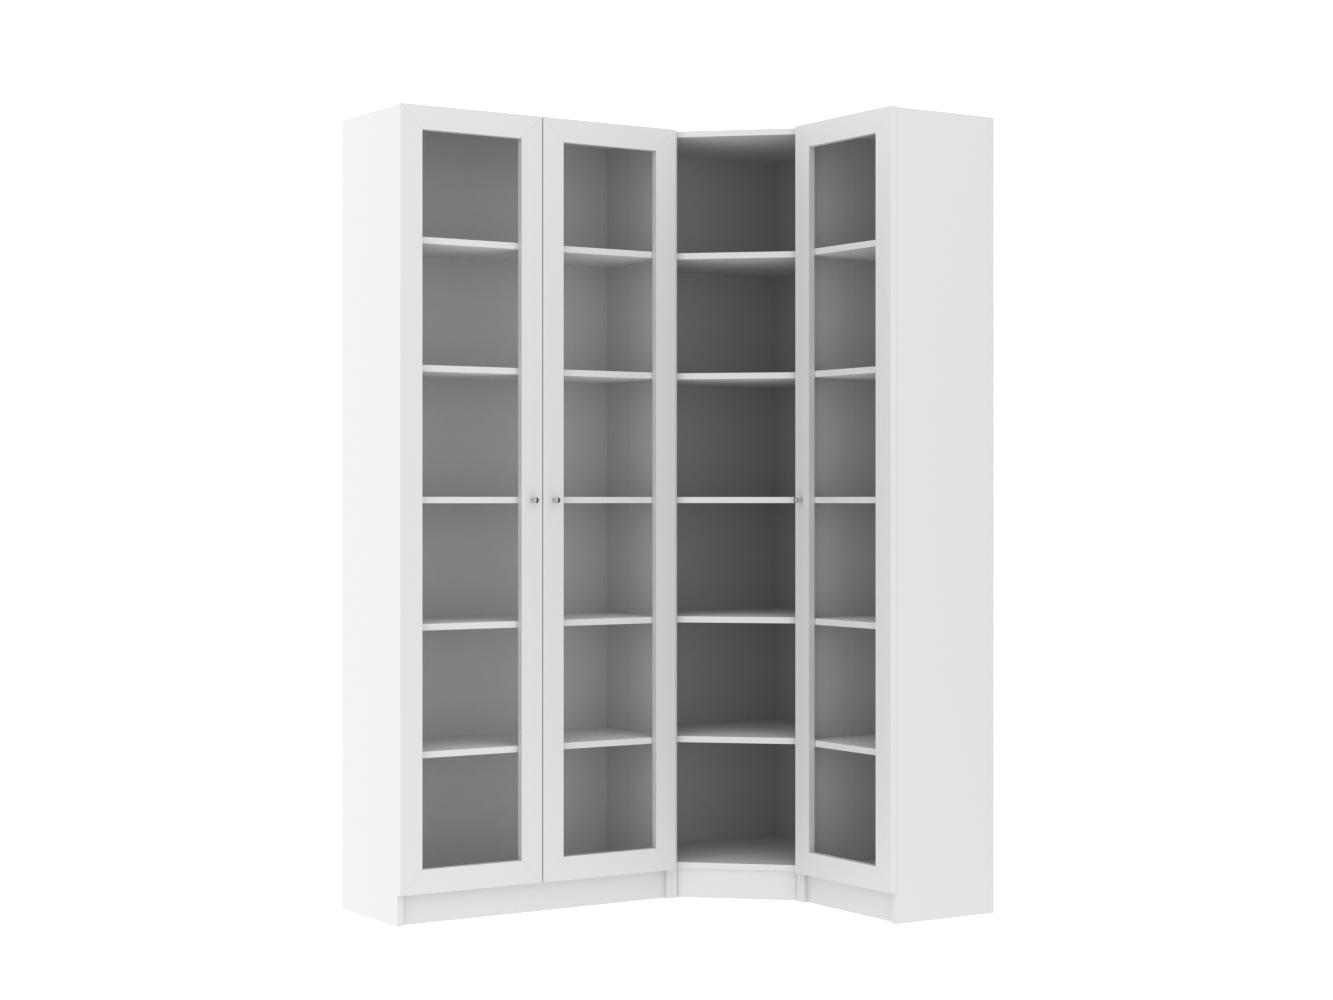 Изображение товара Книжный шкаф Билли 347 white ИКЕА (IKEA), 135x30x202 см на сайте adeta.ru